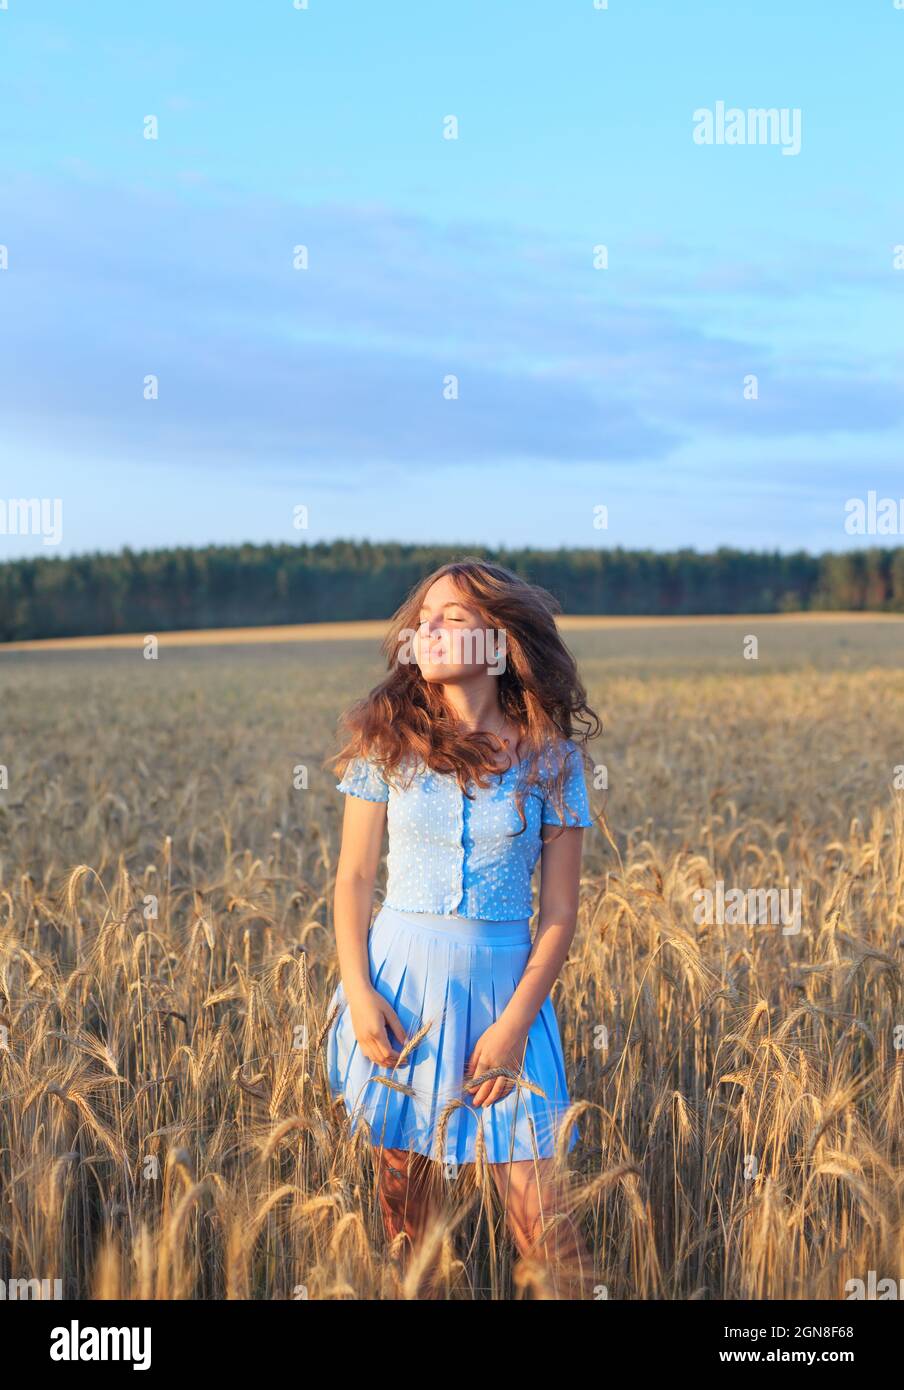 Happy teen girl lächelt auf Weizenfeld und berührt Ähren von Weizen mit der Hand. Schöner Teenager, der die Natur bei warmem Sonnenschein in einem Weizenfeld genießt Stockfoto